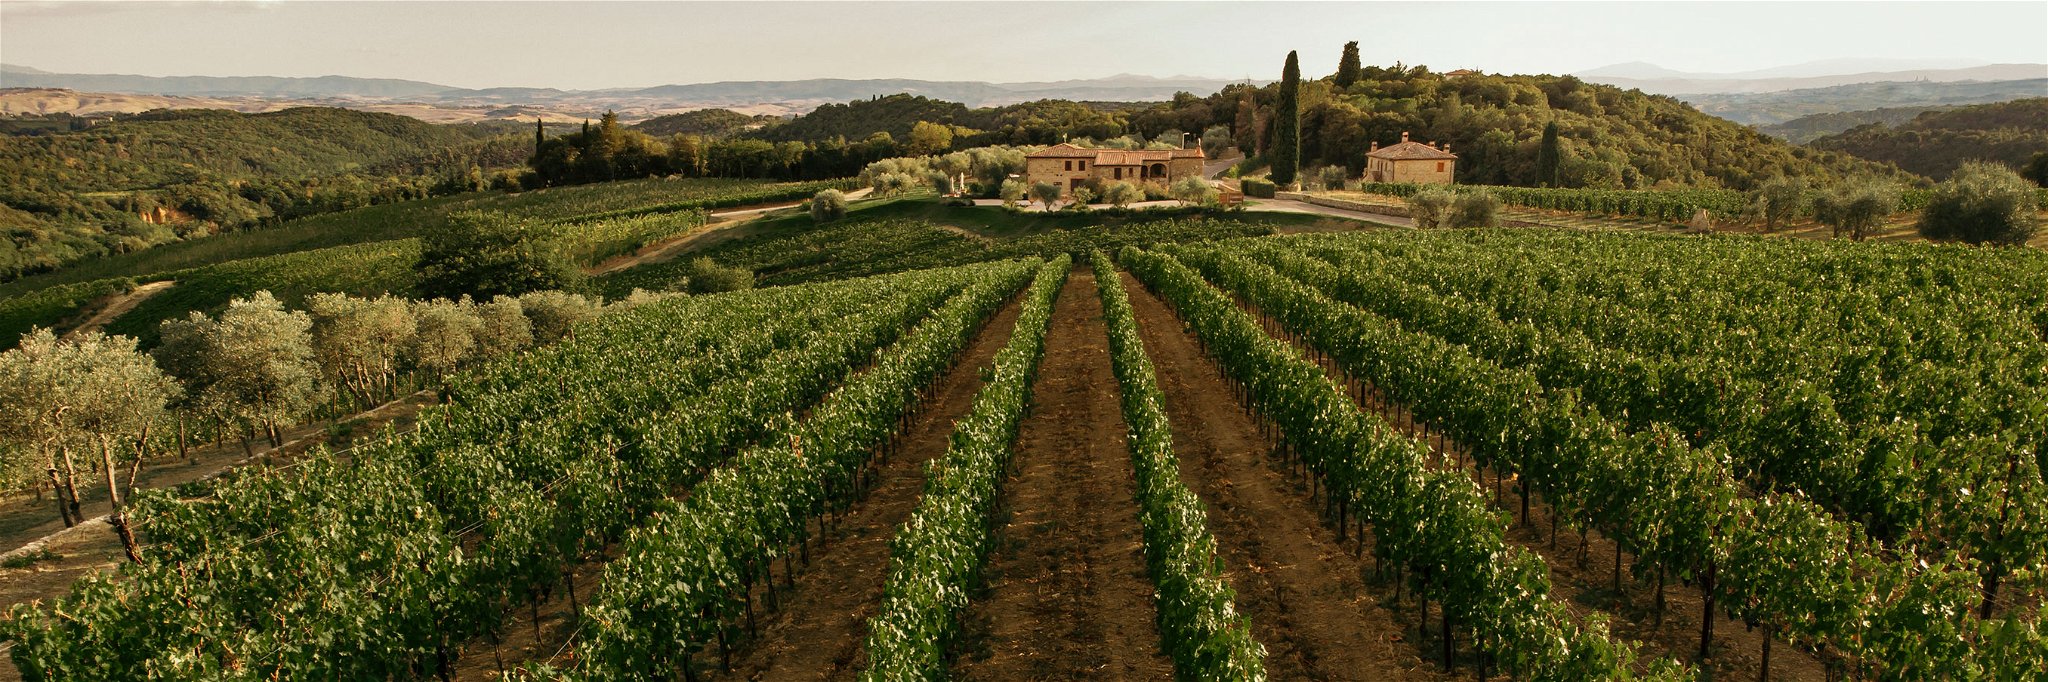 Das einmalige Weingut Boschetto Campacci.